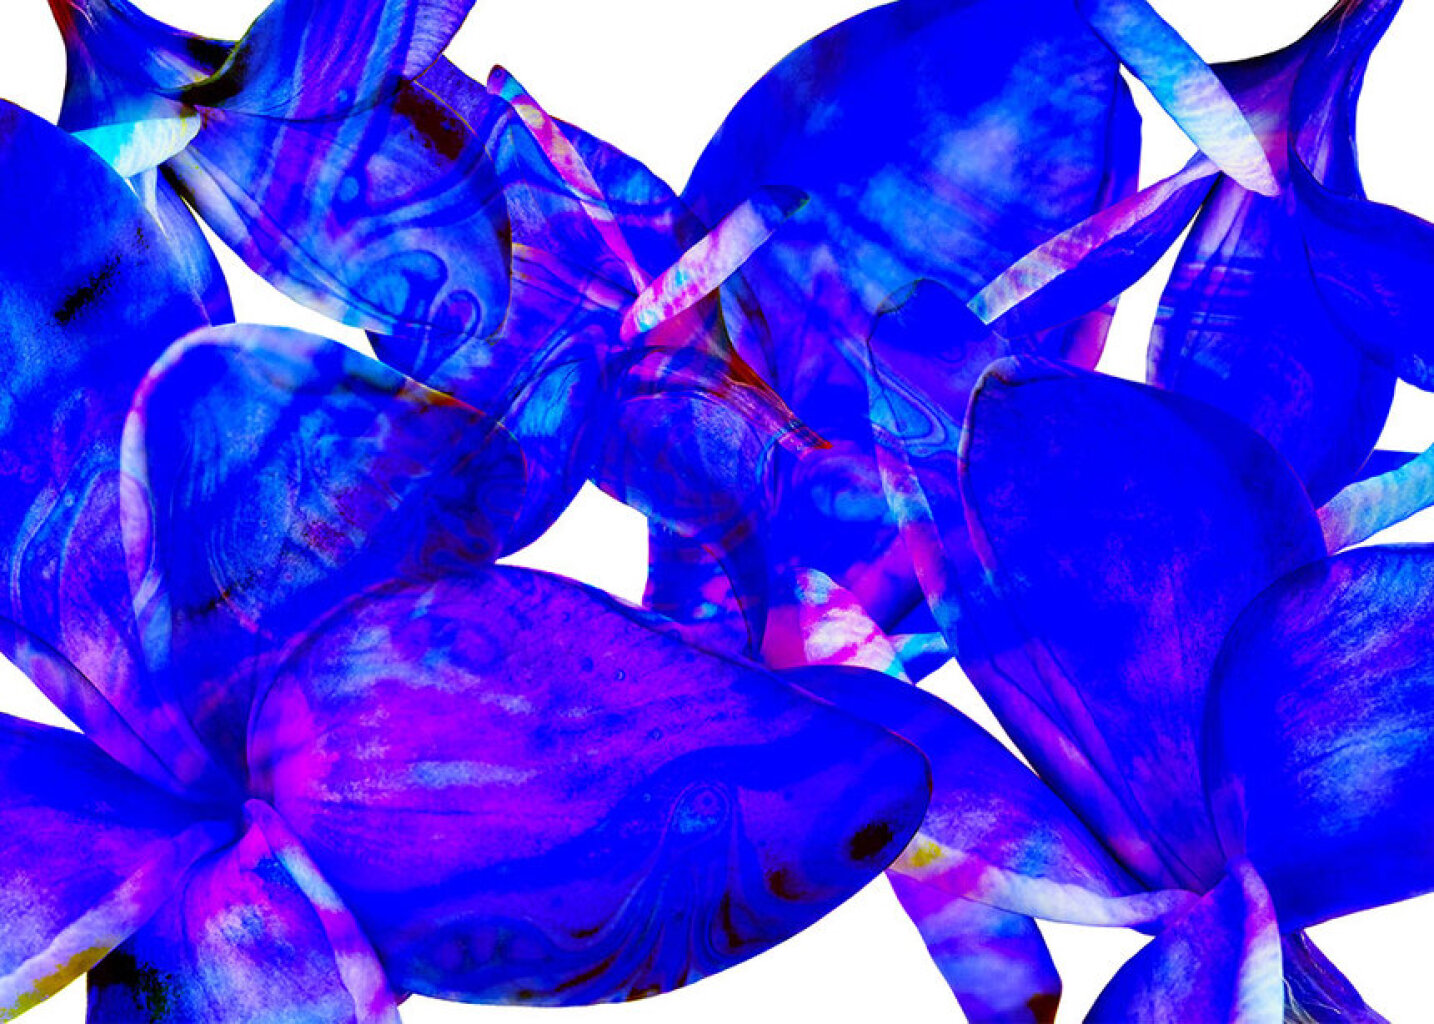 Quadro Flores Blue por Isadora Fabrini -  CATEGORIAS